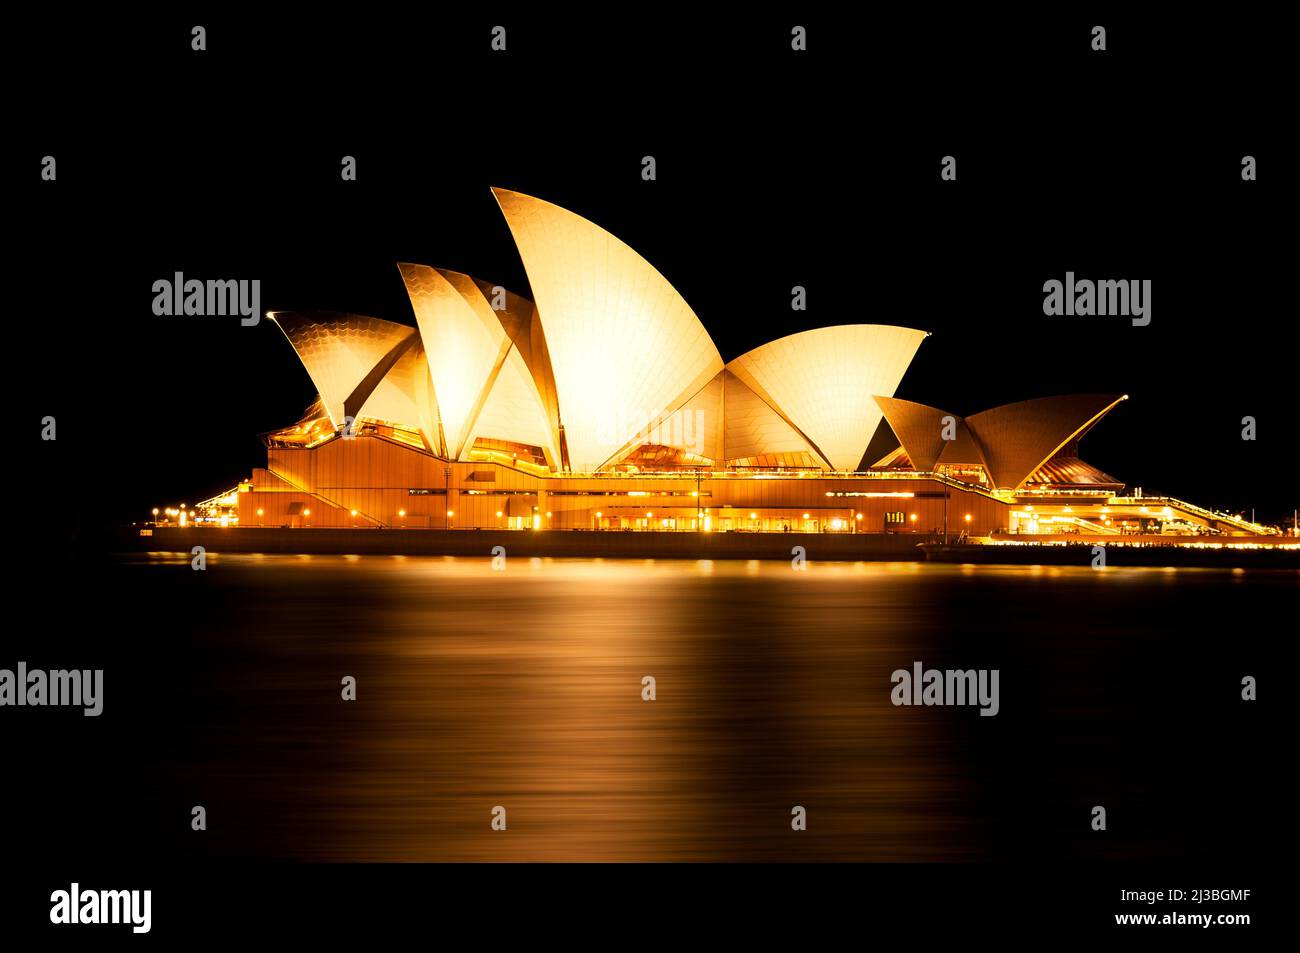 Iconic Sydney Opera House at night. Stock Photo